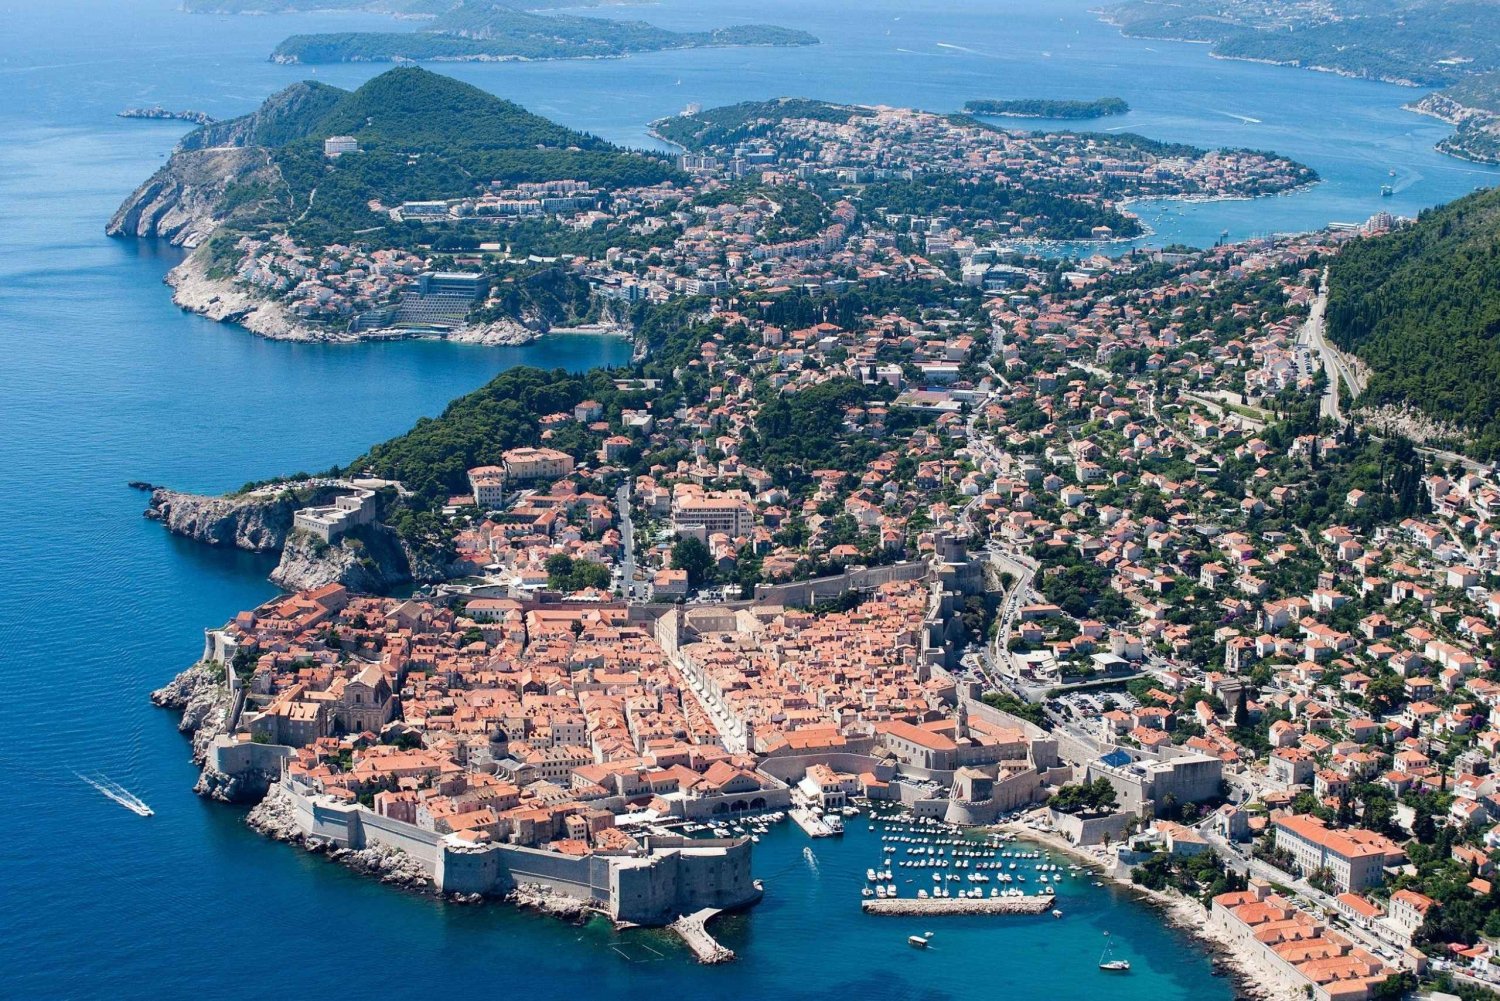 Dubrovnik walking tour from Kotor